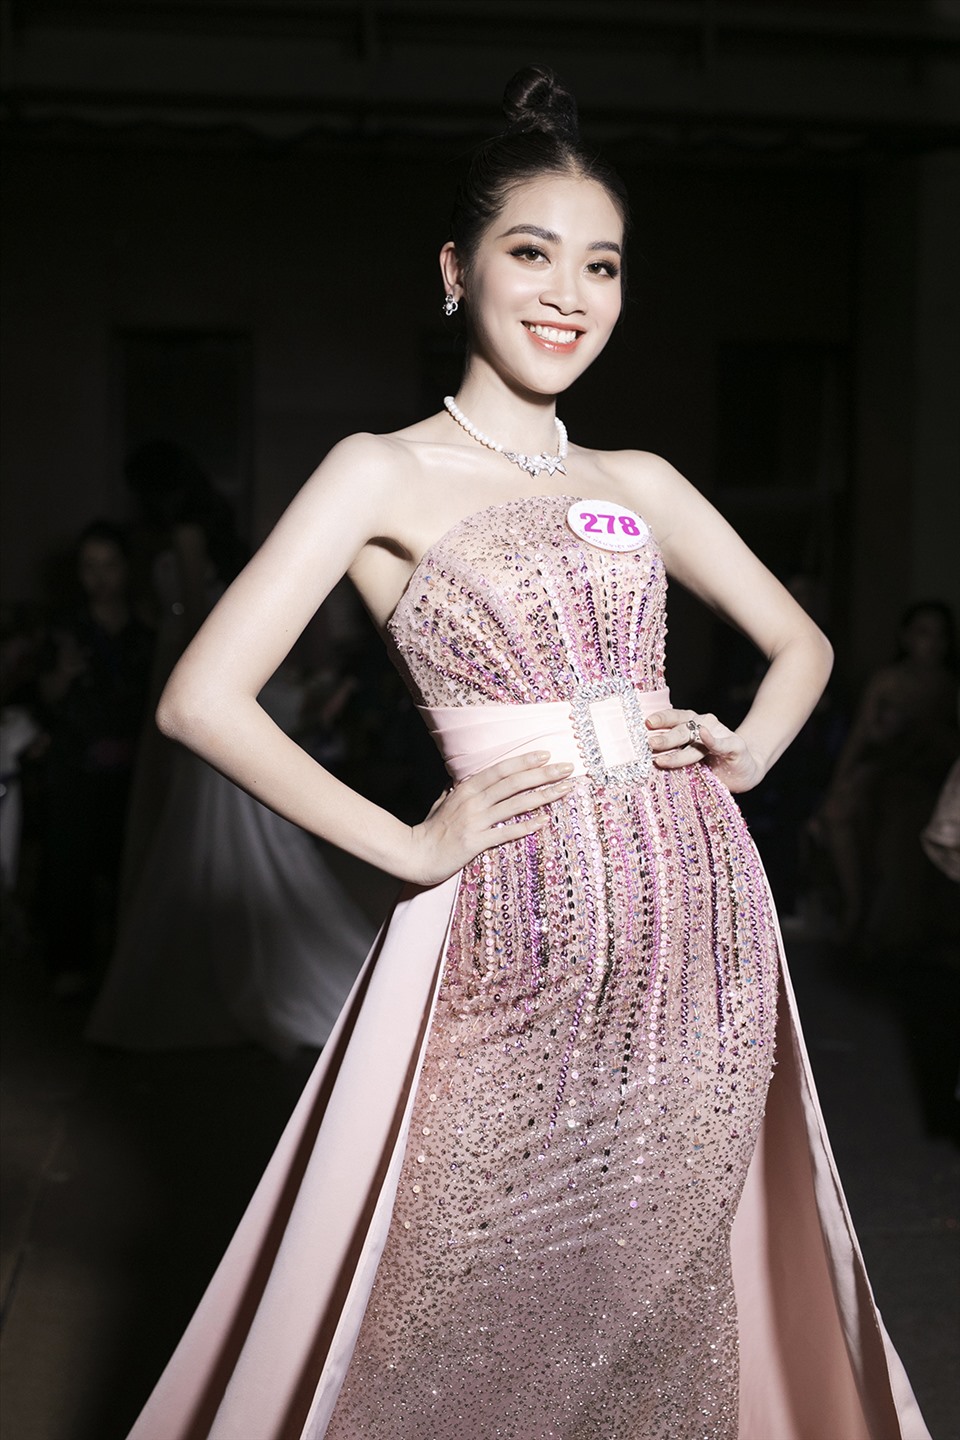 Trước đó, Quỳnh Trang được đánh giá là người thông minh, khéo léo tại Miss Universe Việt Nam 2019. Cô cũng giành được giải phụ “Người đẹp bản lĩnh” trong cuộc thi năm đó. Ảnh: Kiếng Cận.